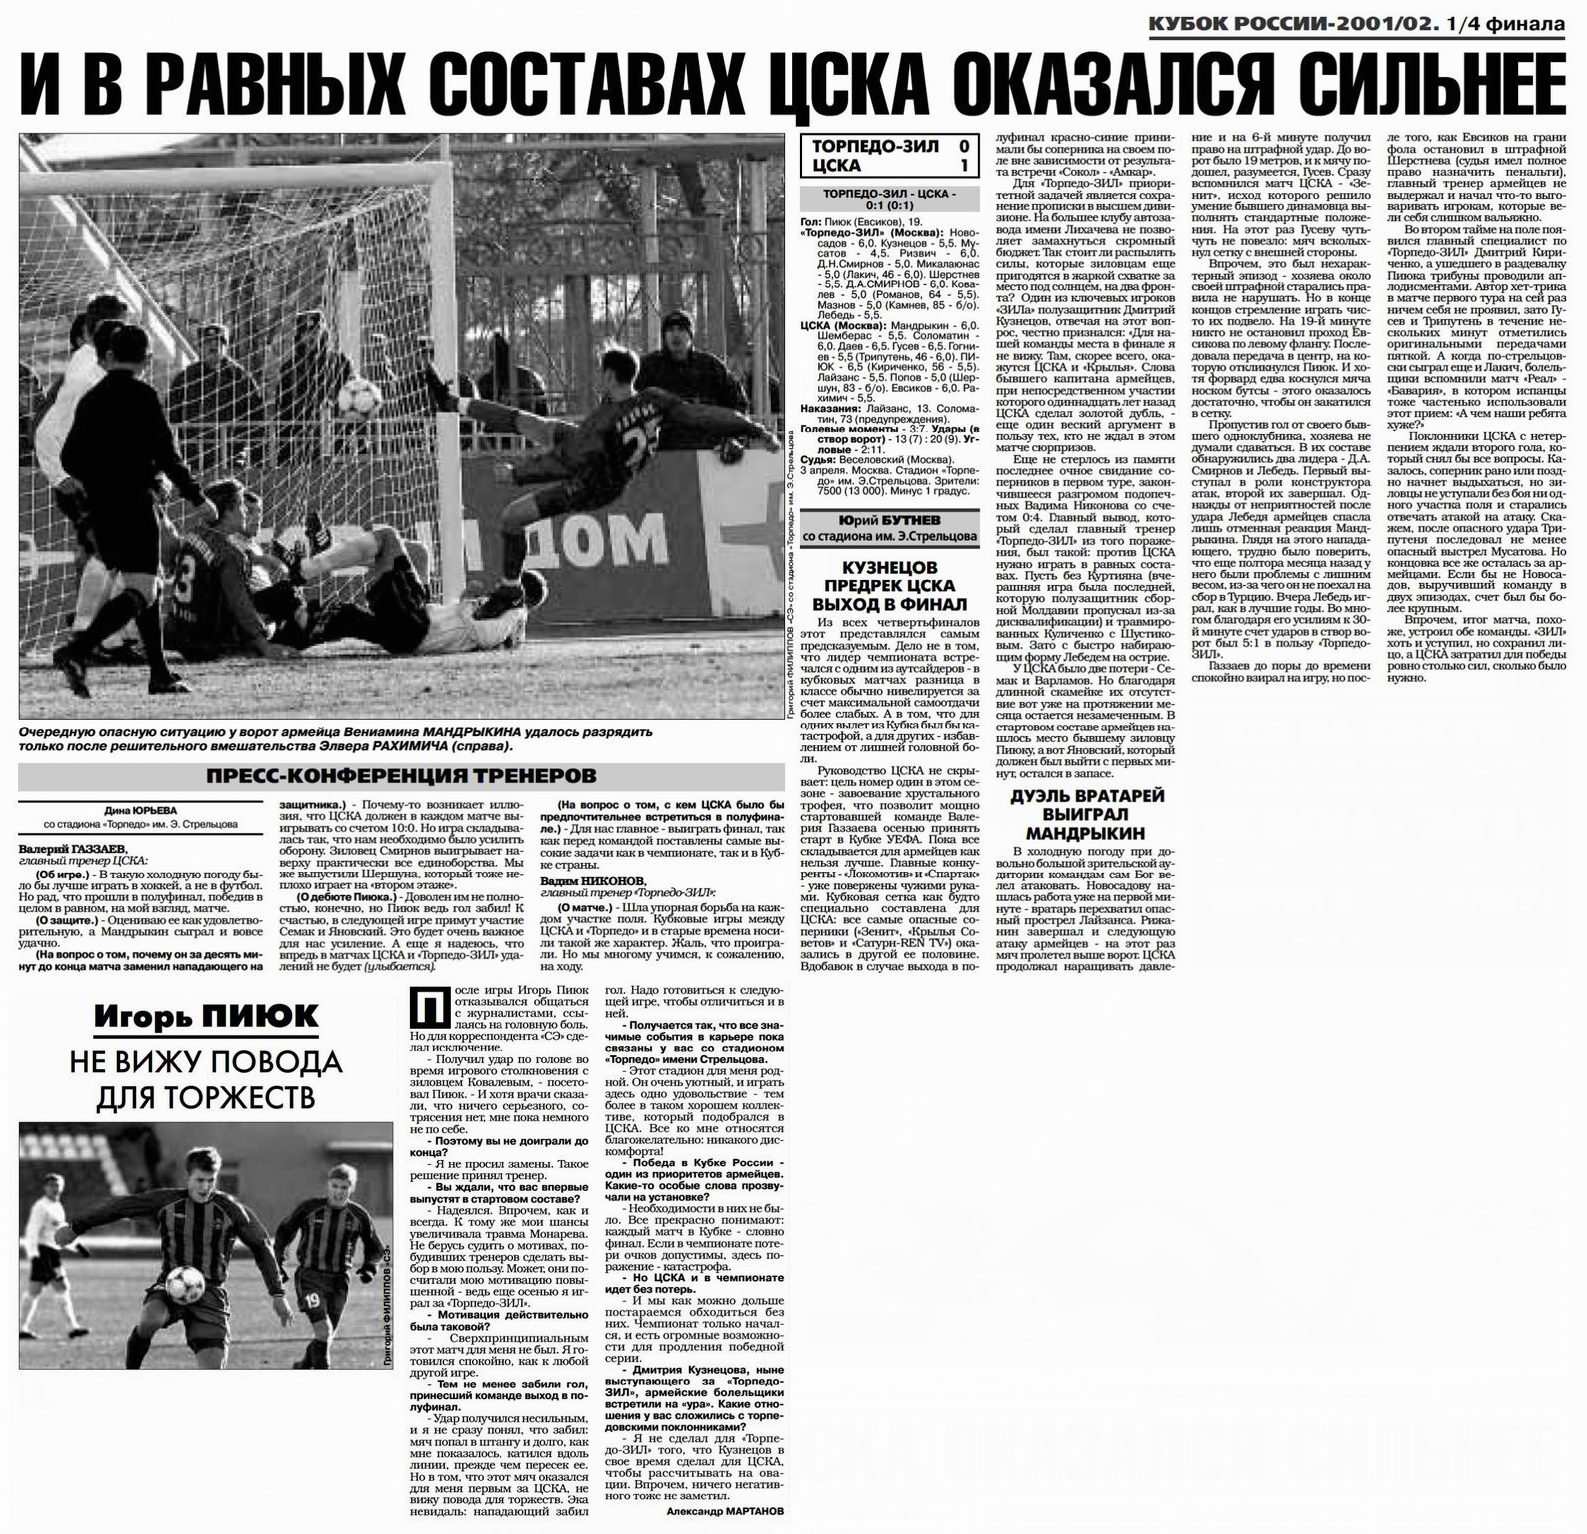 2002-04-03.TorpedoZIL-CSKA